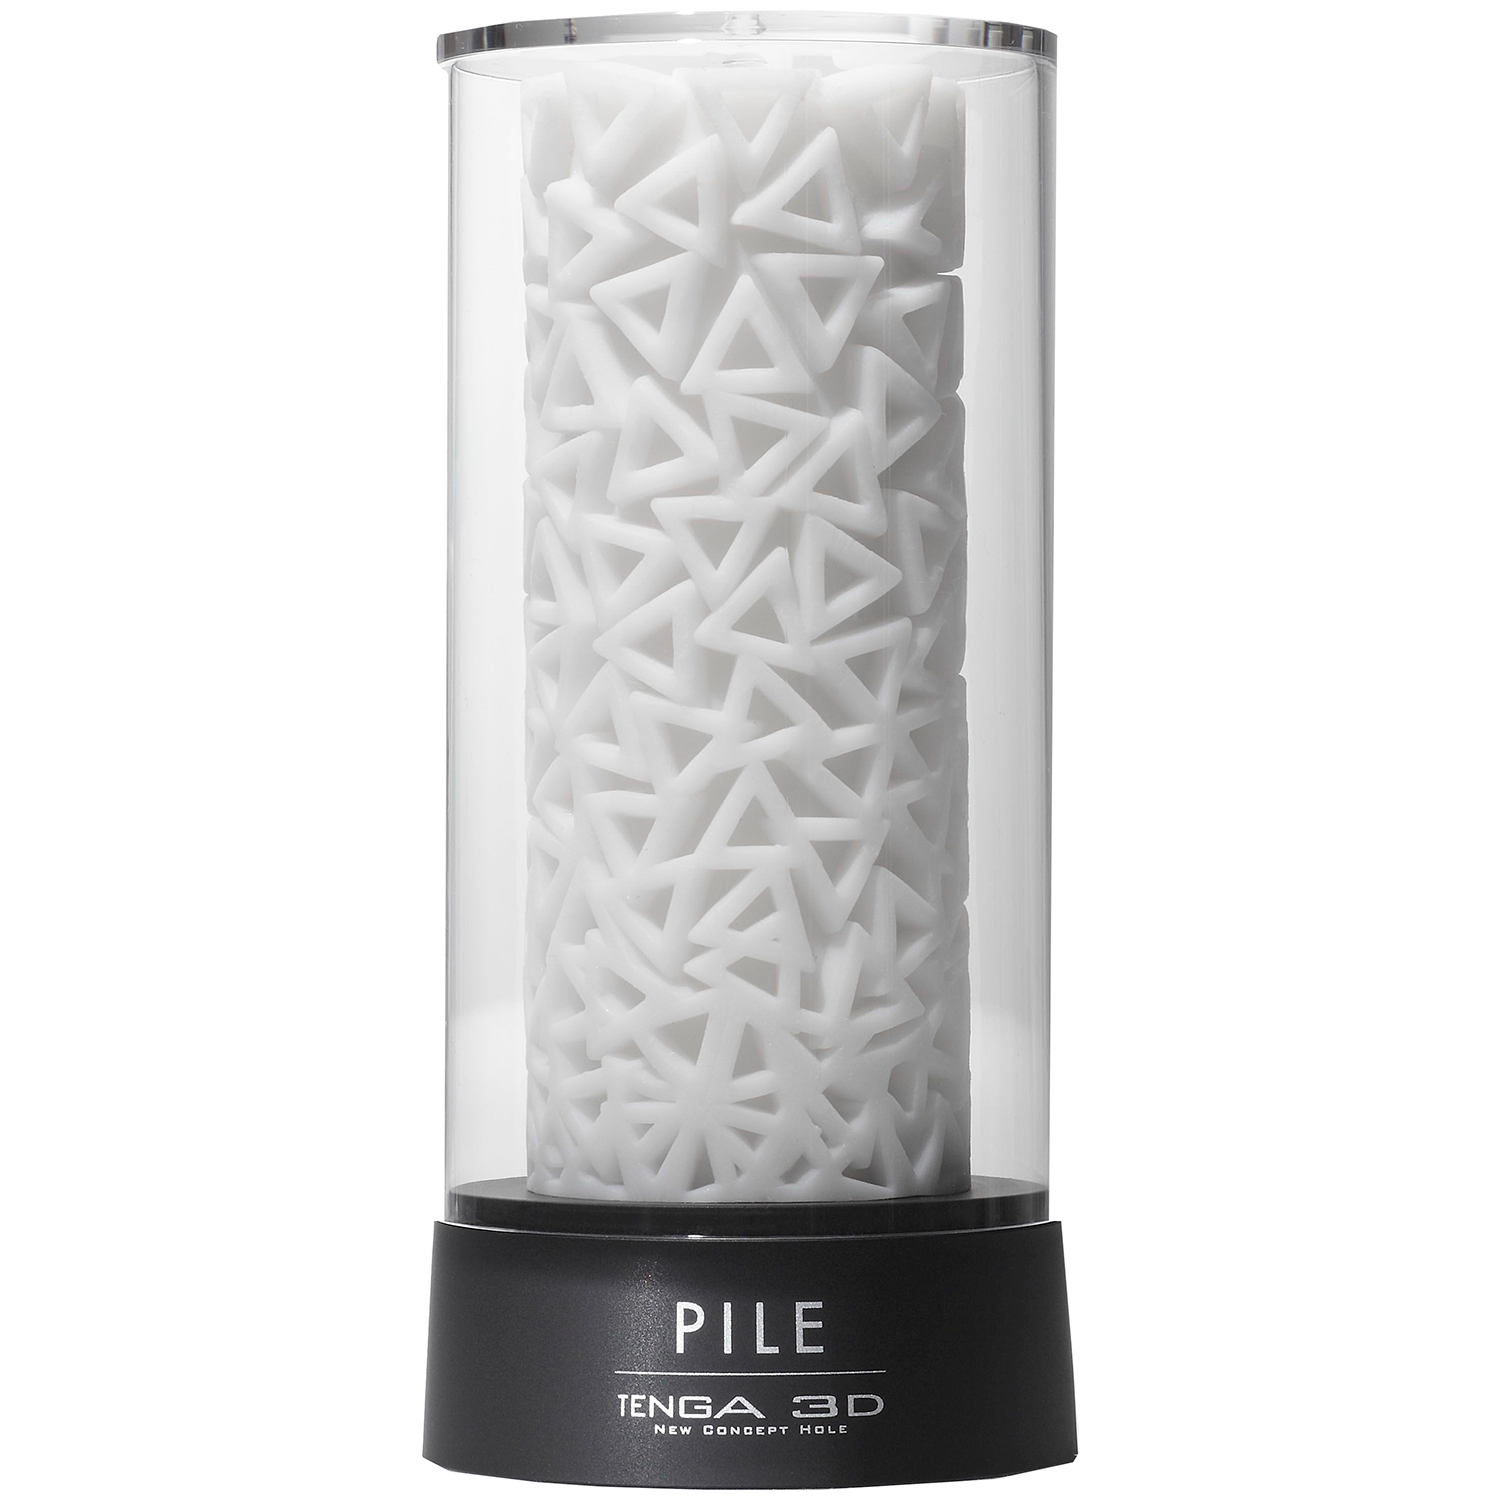 Tenga 3D Pile Onaniprodukt       - Hvid thumbnail